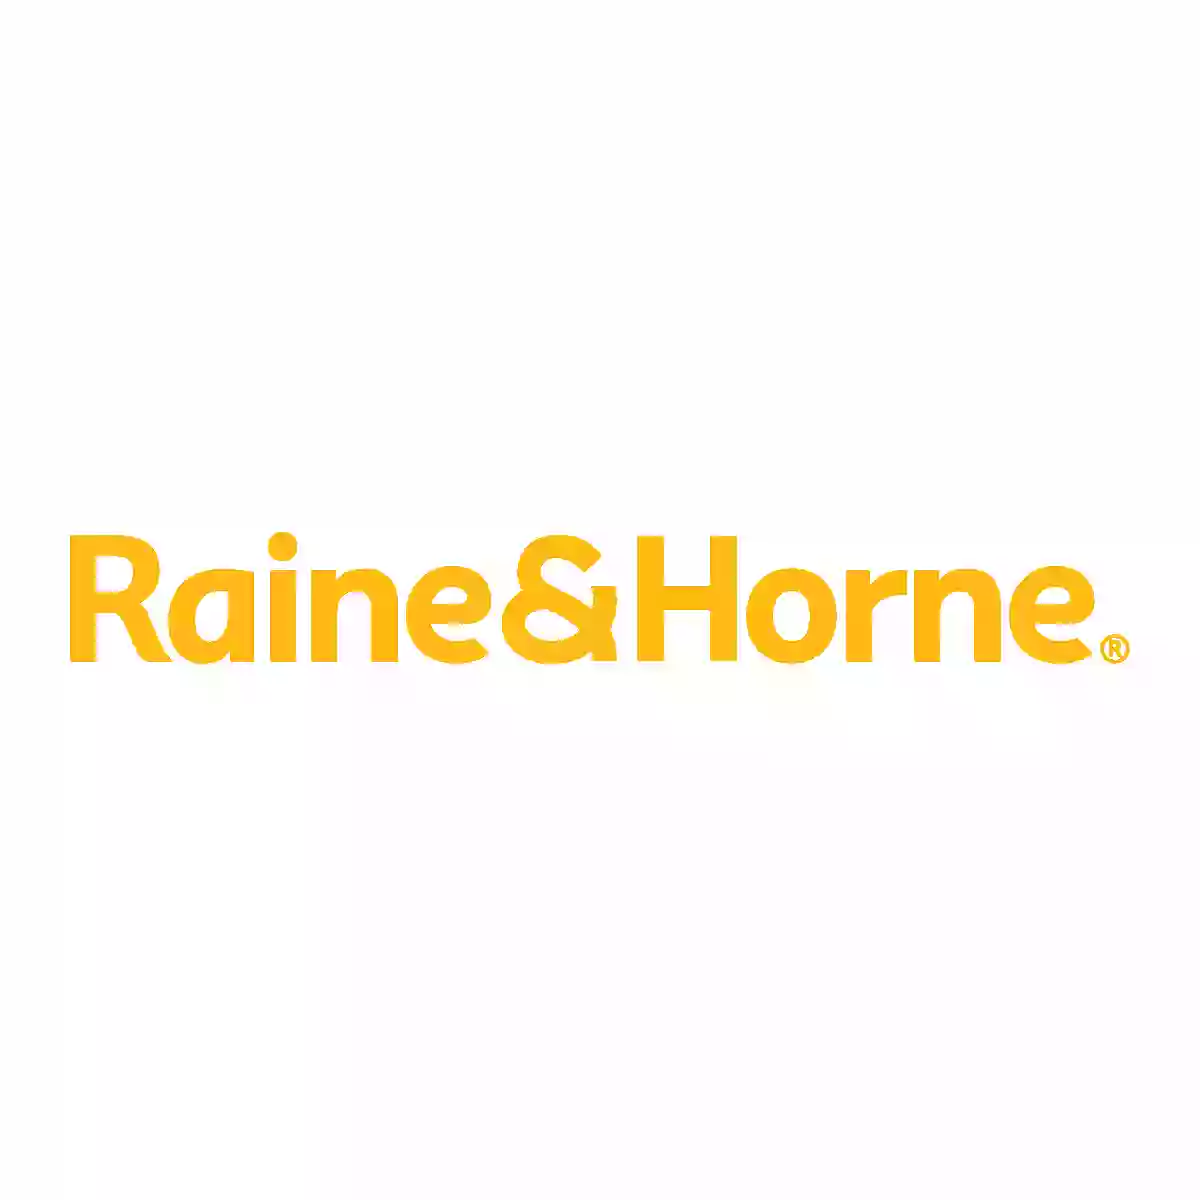 Raine & Horne Sunbury Real Estate Agents